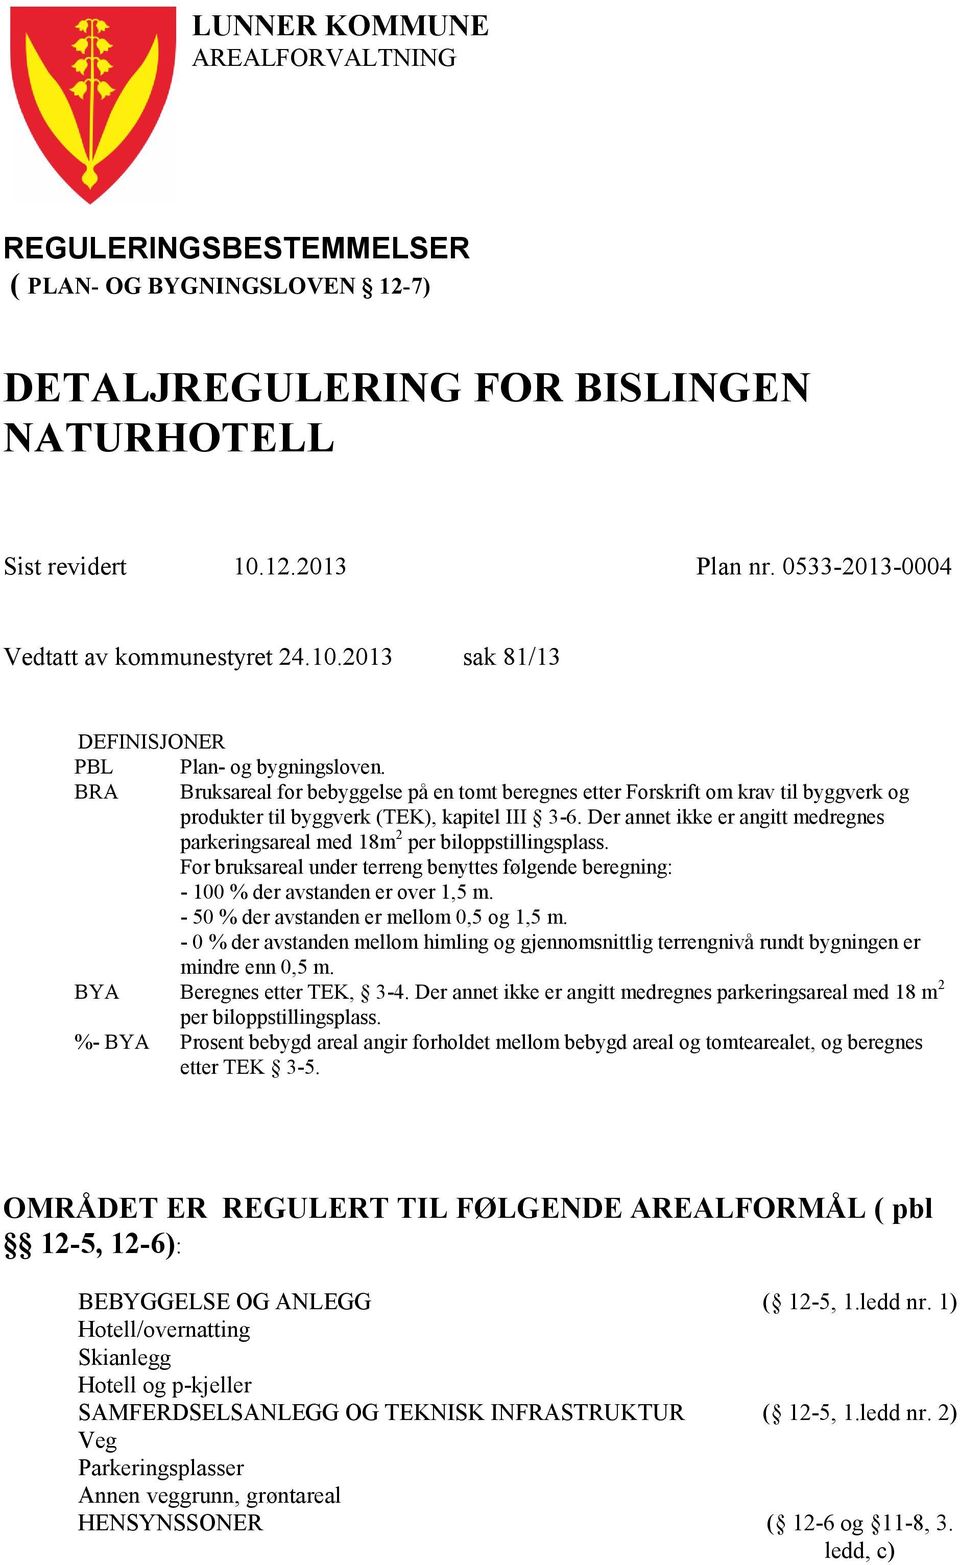 BRA Bruksareal for bebyggelse på en tomt beregnes etter Forskrift om krav til byggverk og produkter til byggverk (TEK), kapitel III 3-6.